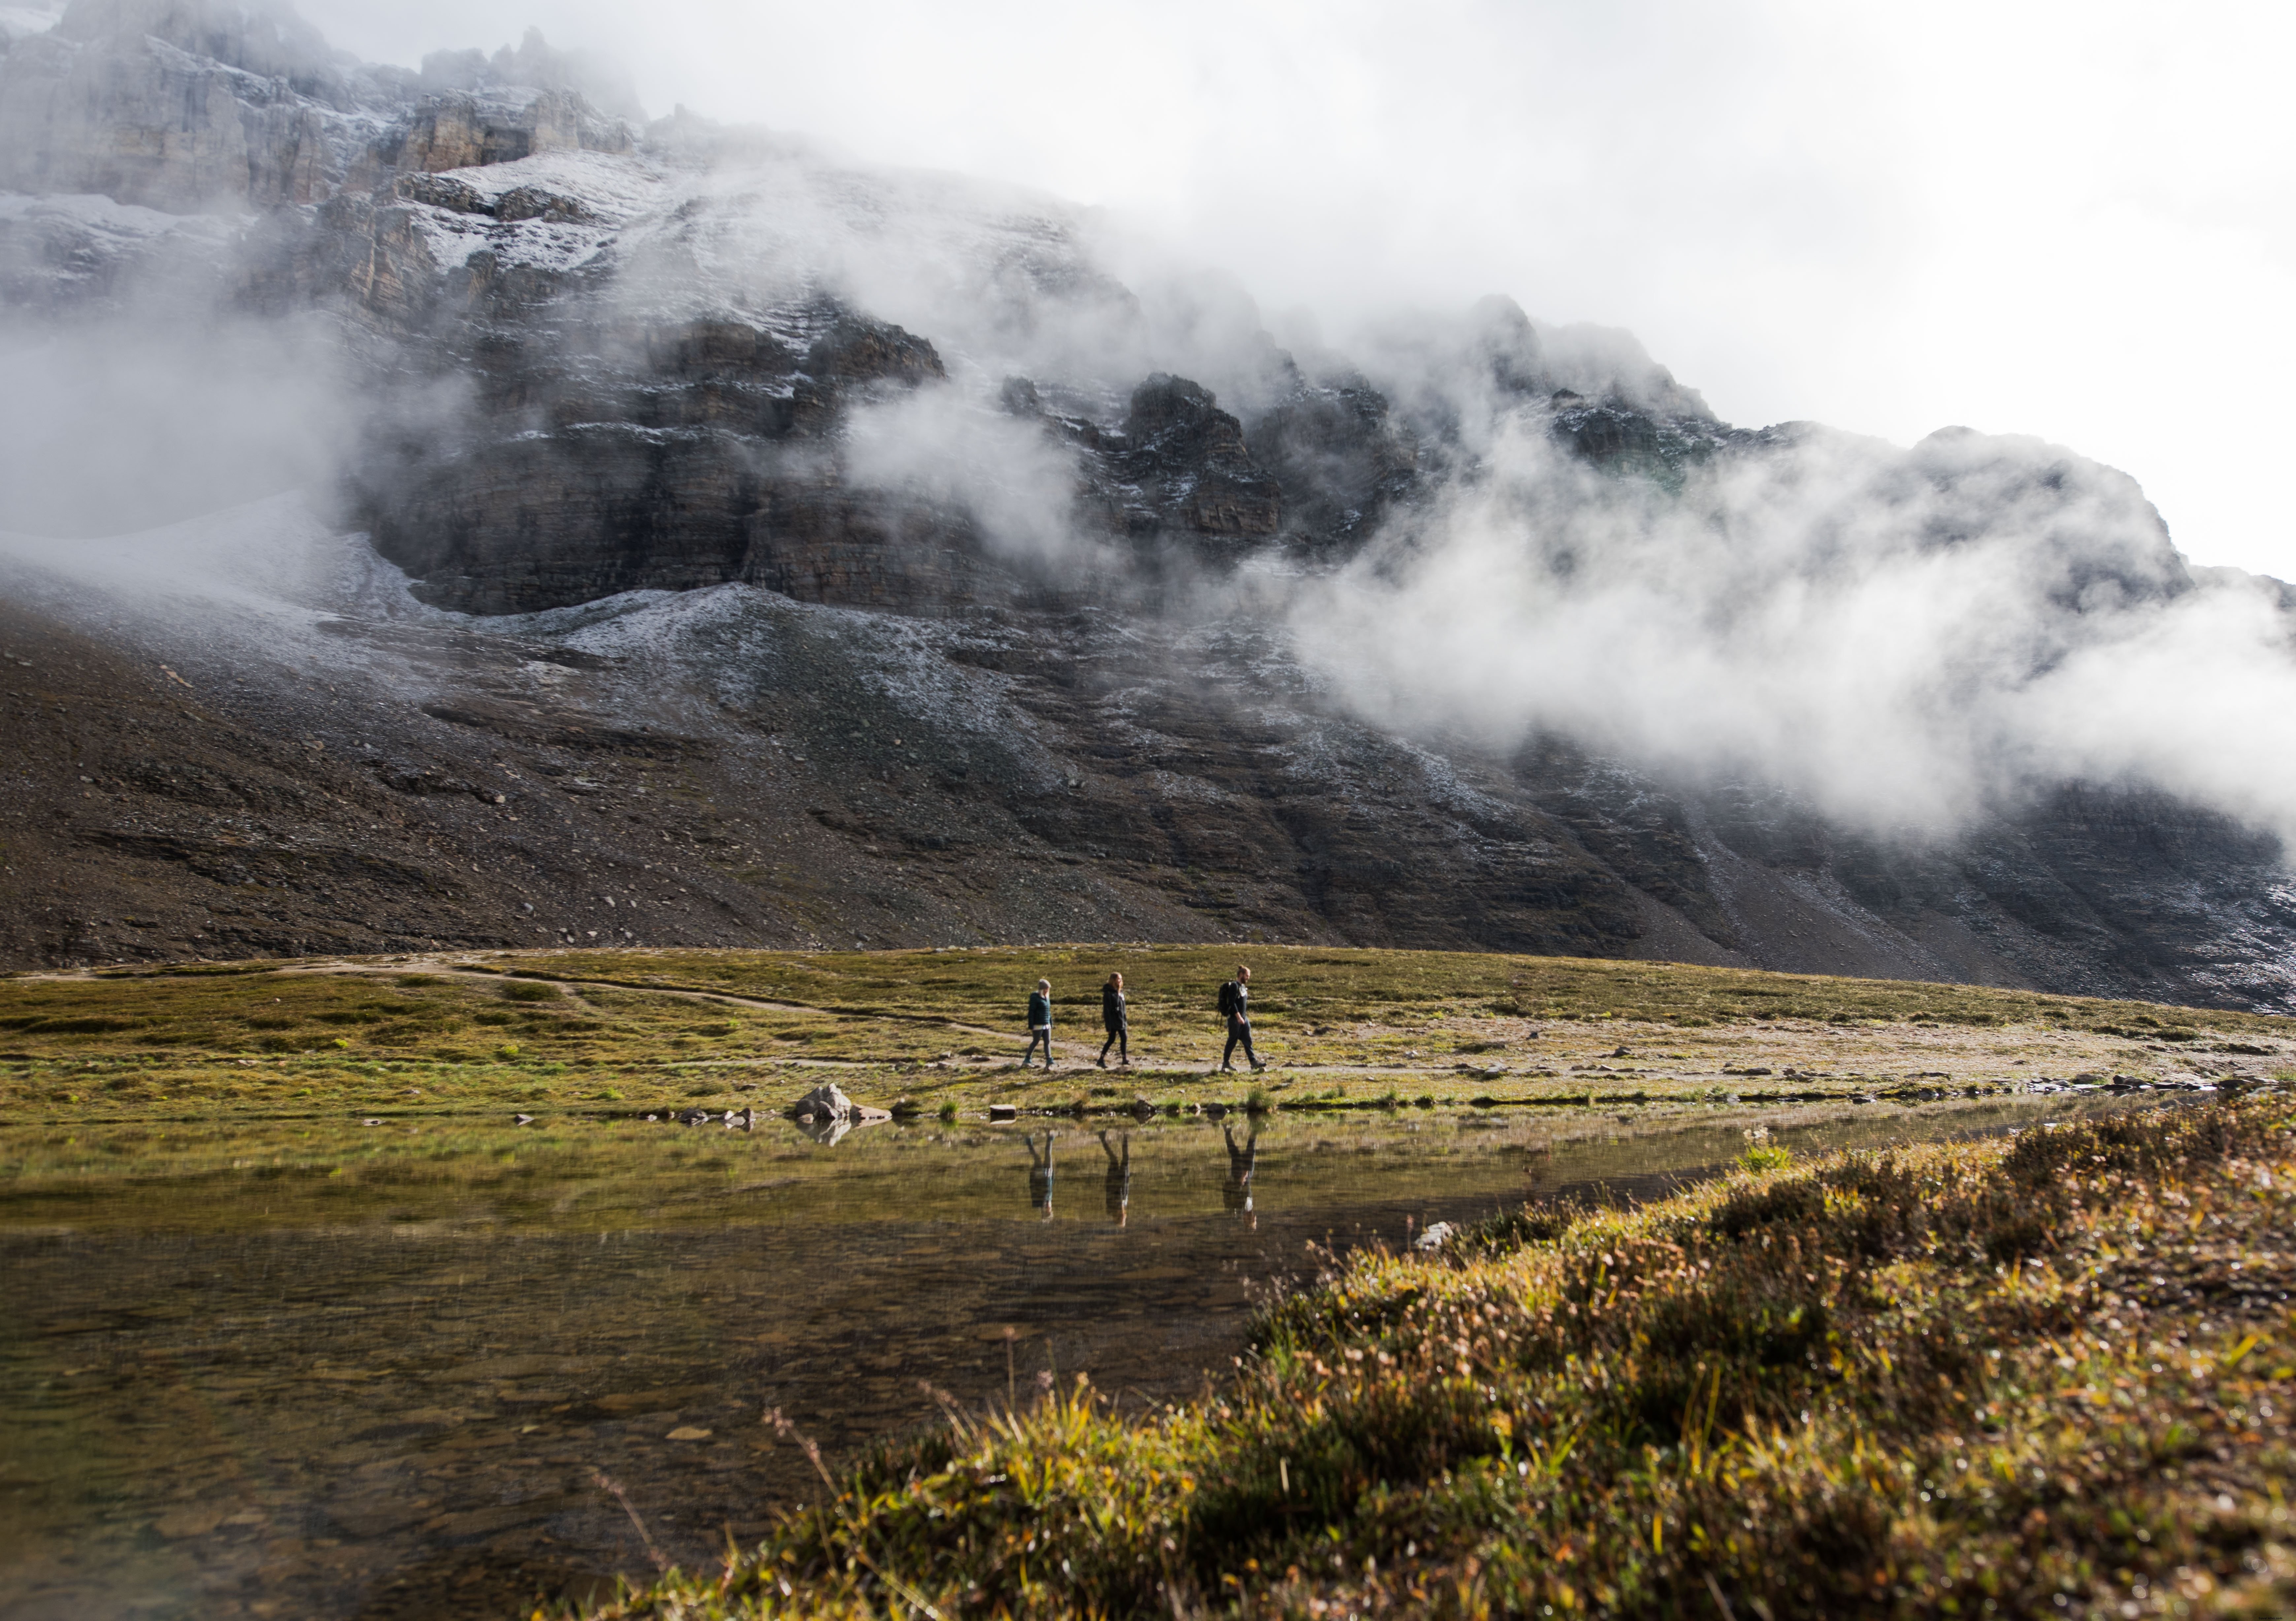 Foto Pejalan Kaki Di Bawah Pegunungan Berkabut 